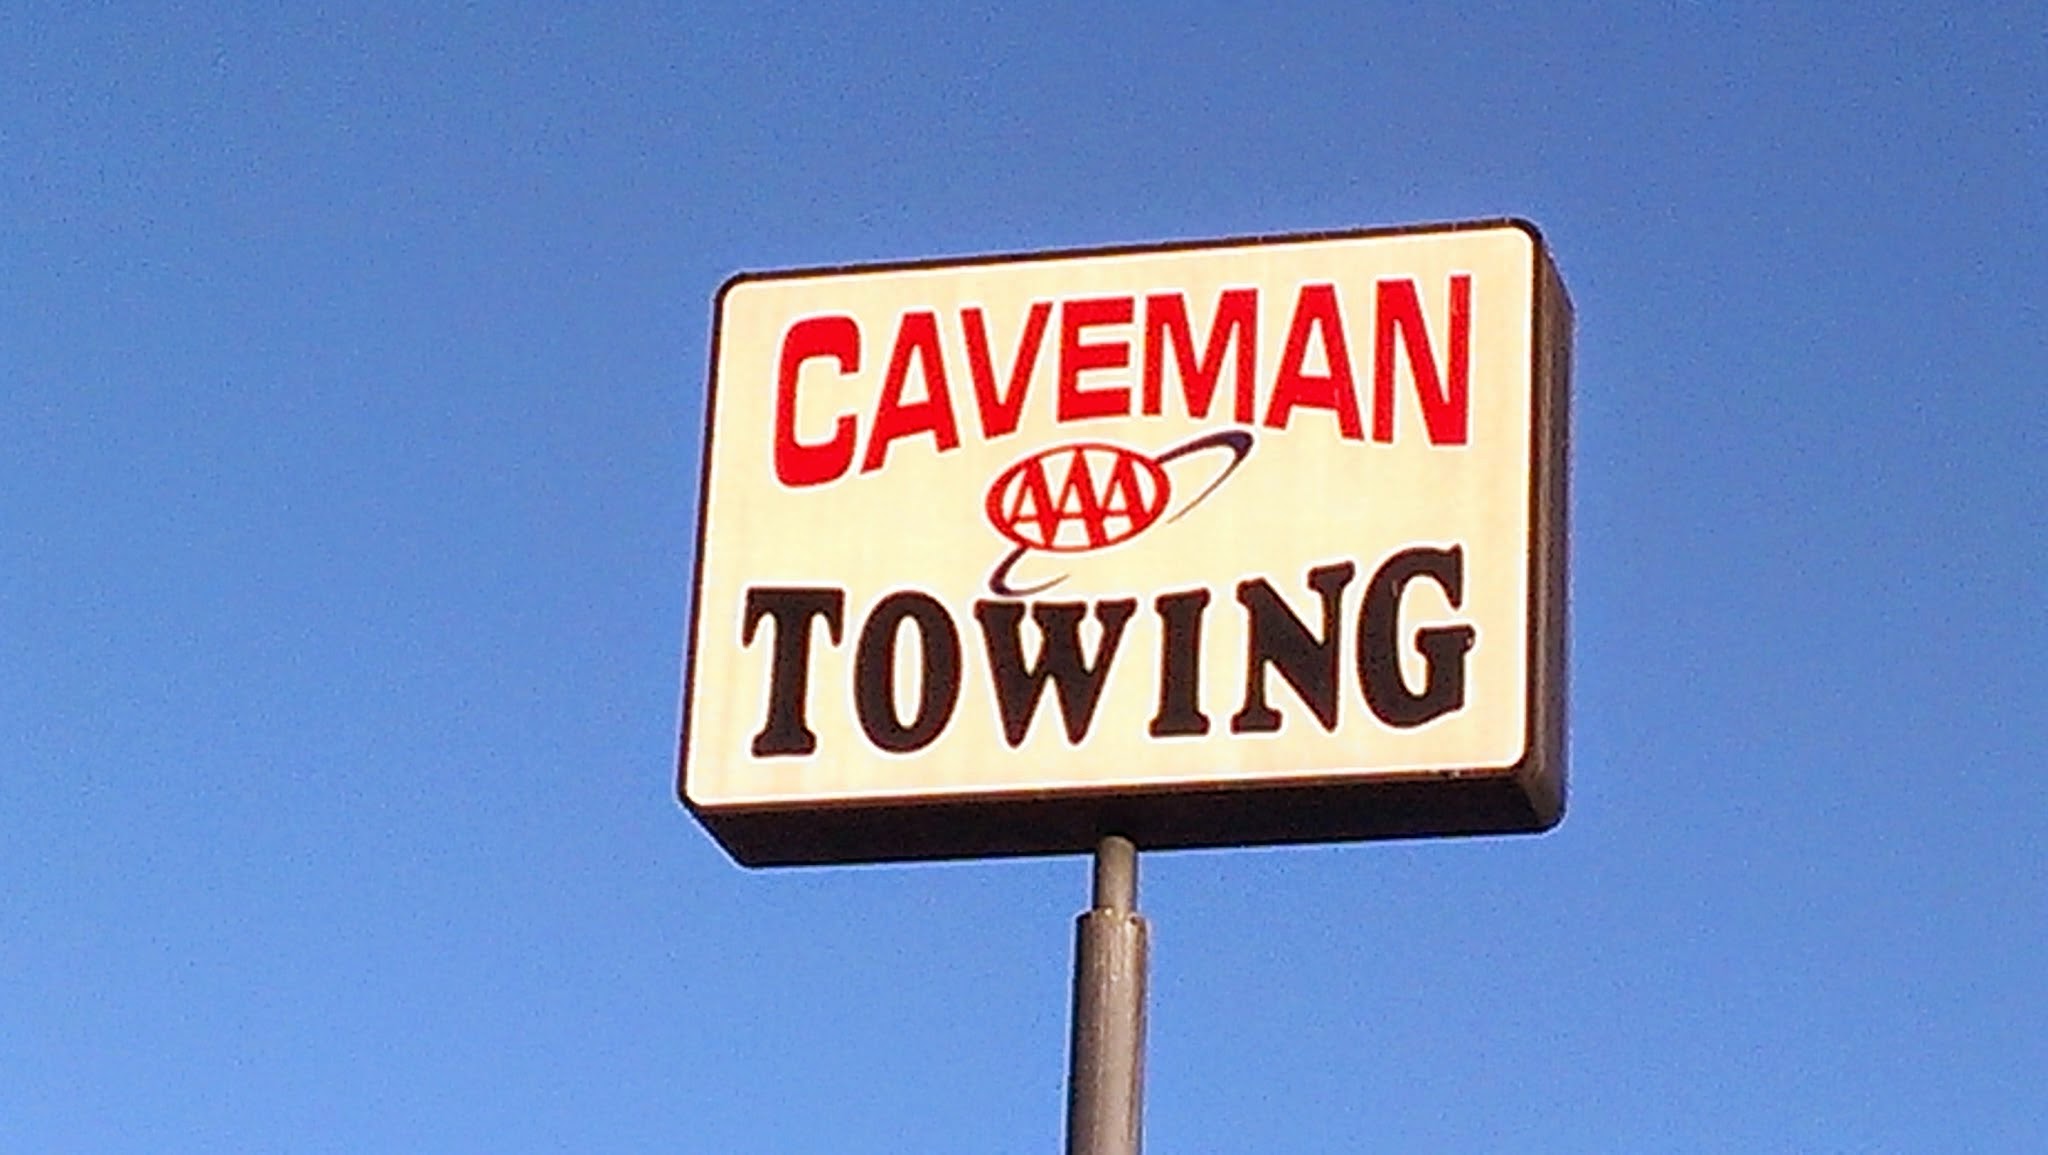 Caveman Towing